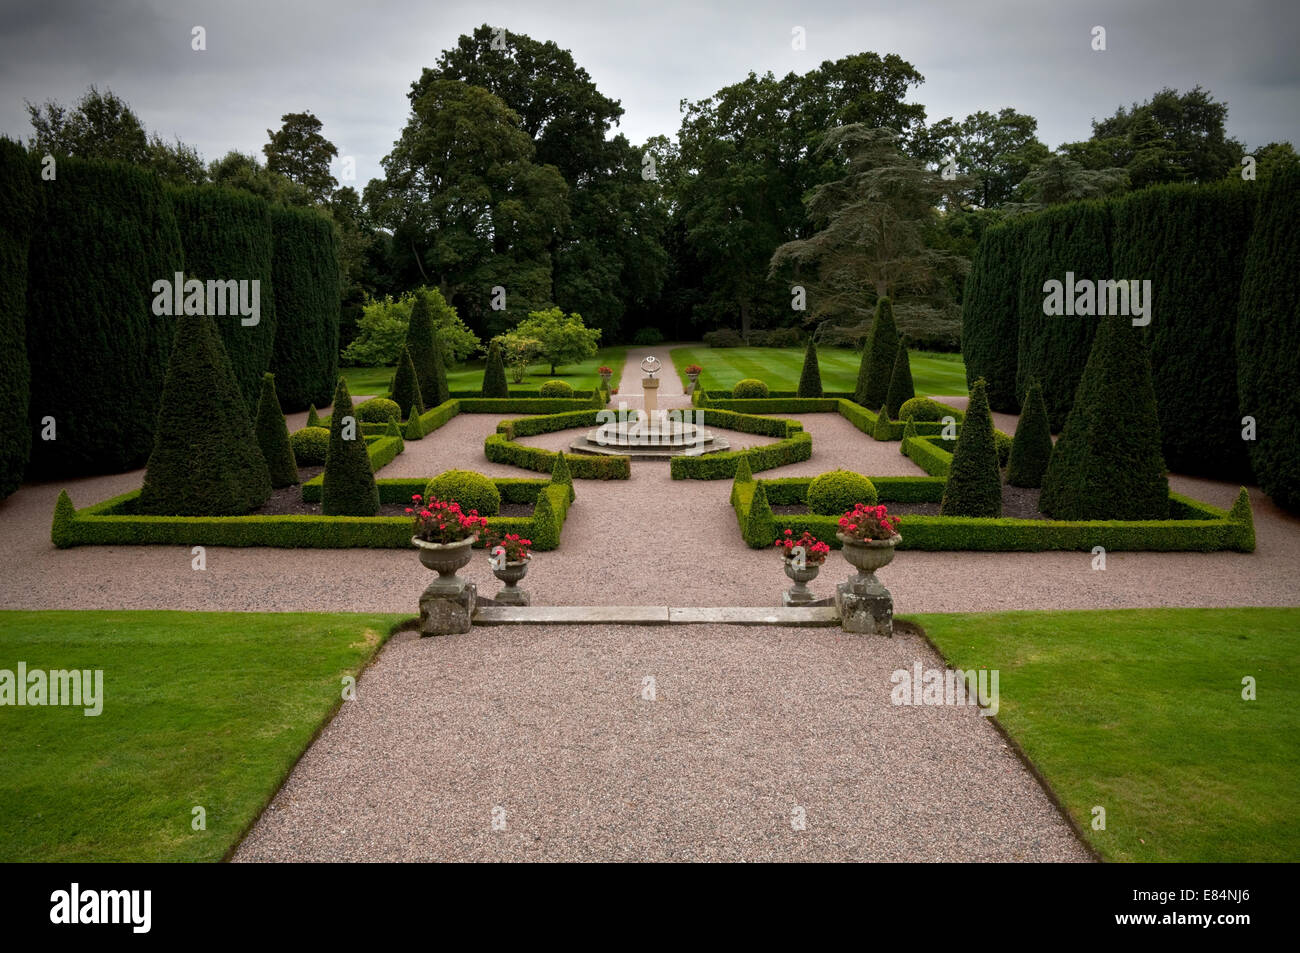 Les jardins à la française au 18e siècle le château de Hillsborough, la résidence officielle du gouvernement dans la région de Hillsborough, comté de Down, Irlande du Nord. Banque D'Images